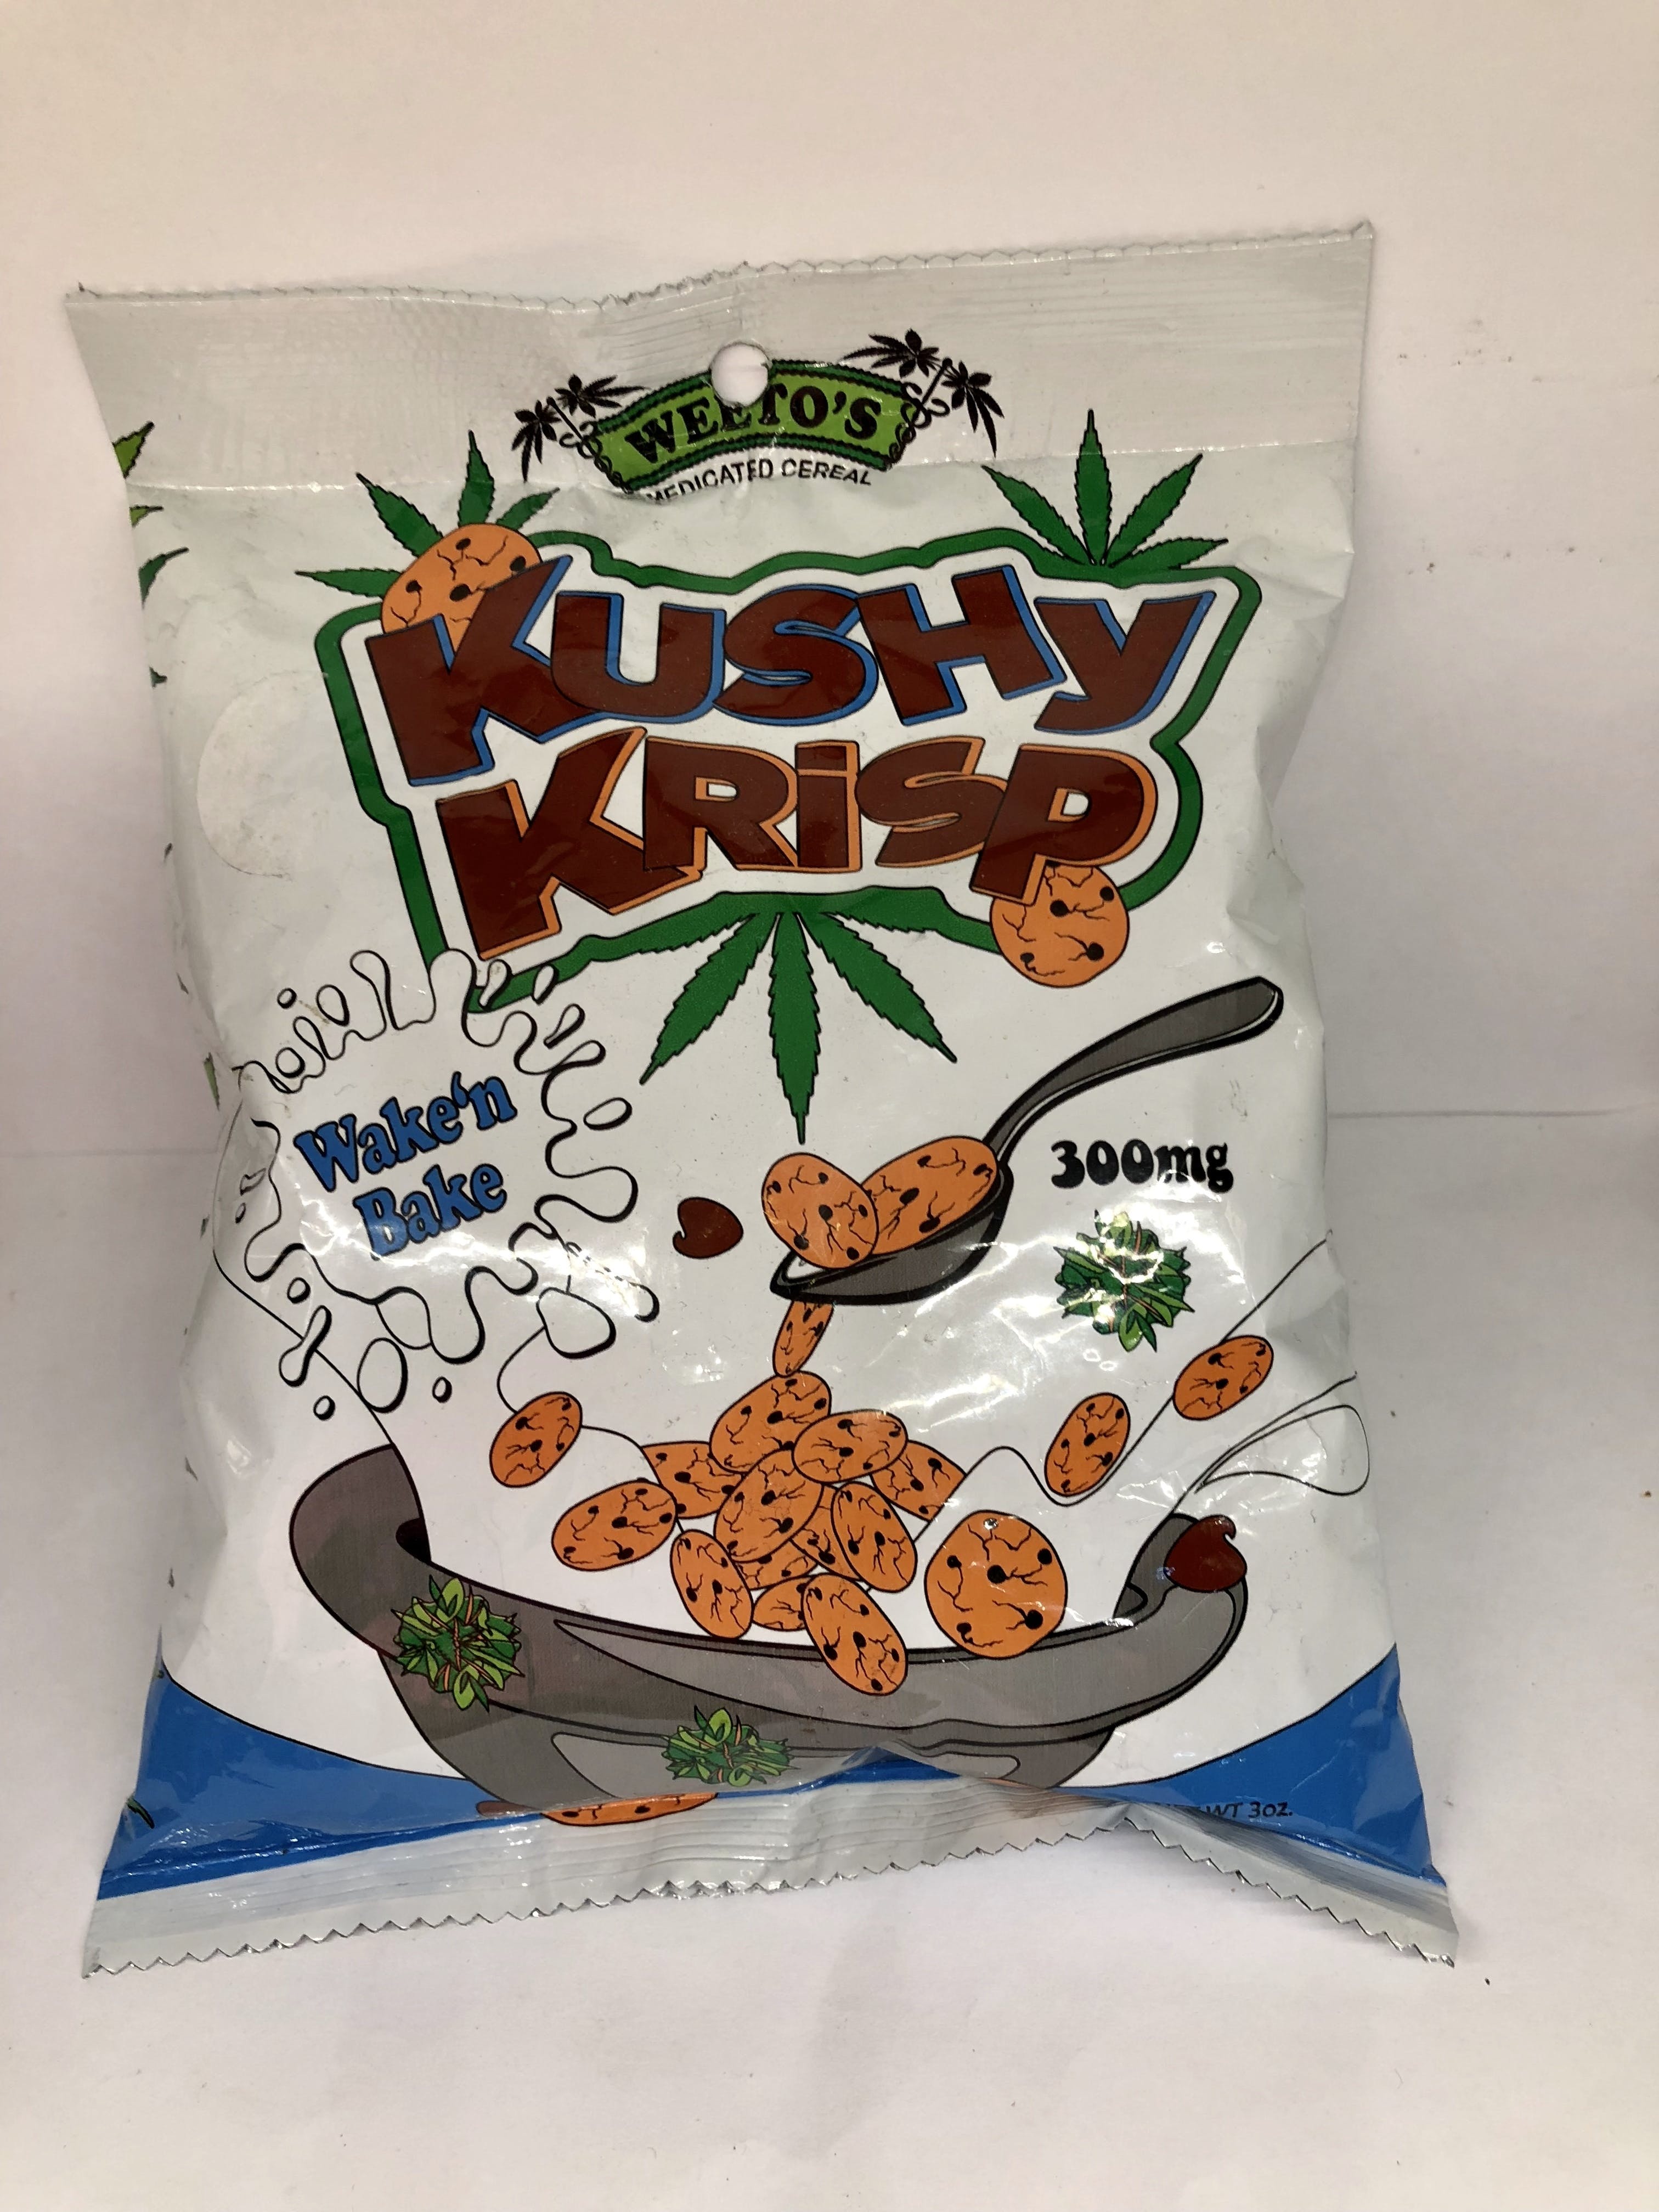 edible-weetos-kushy-krisp-300mg